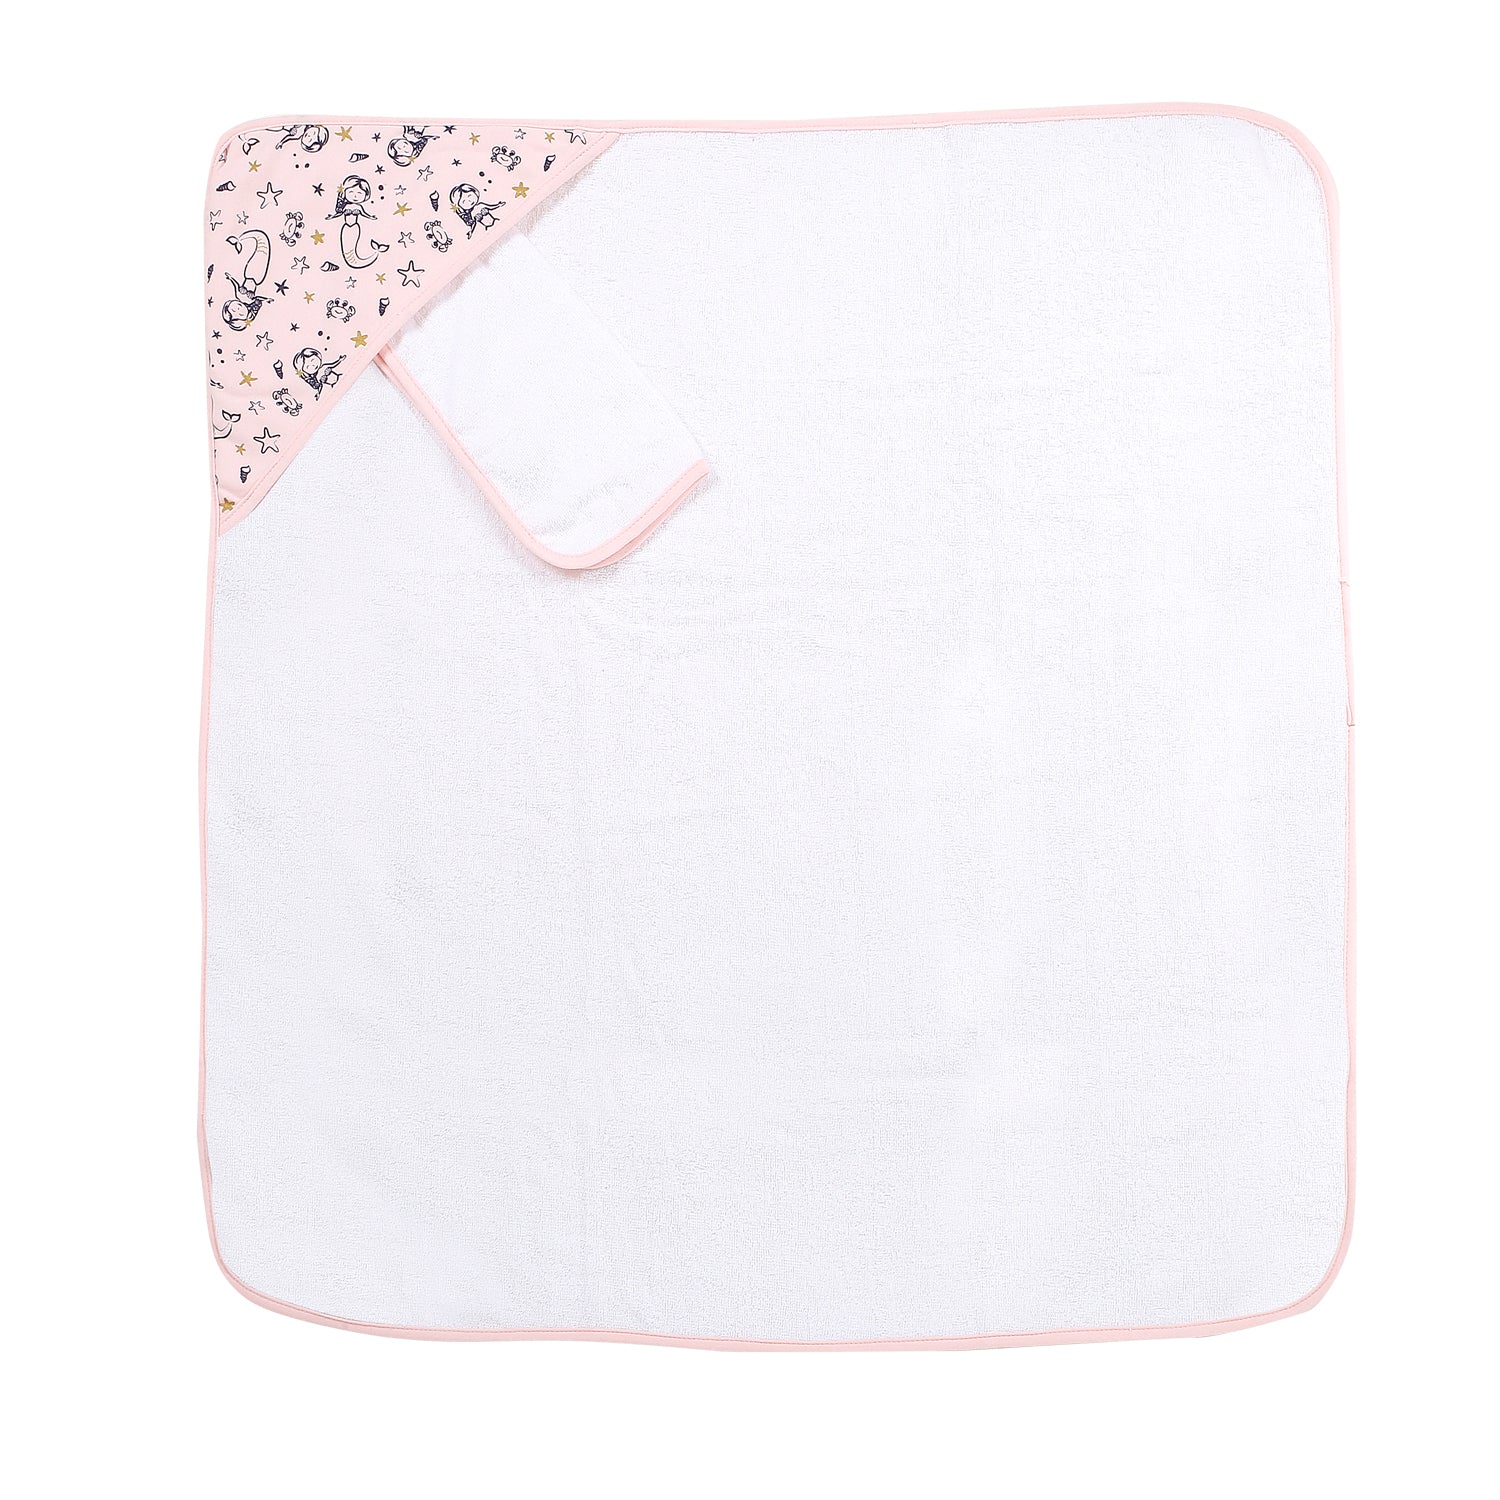 Mermaid Pink Hooded Towel & Wash Cloth Set